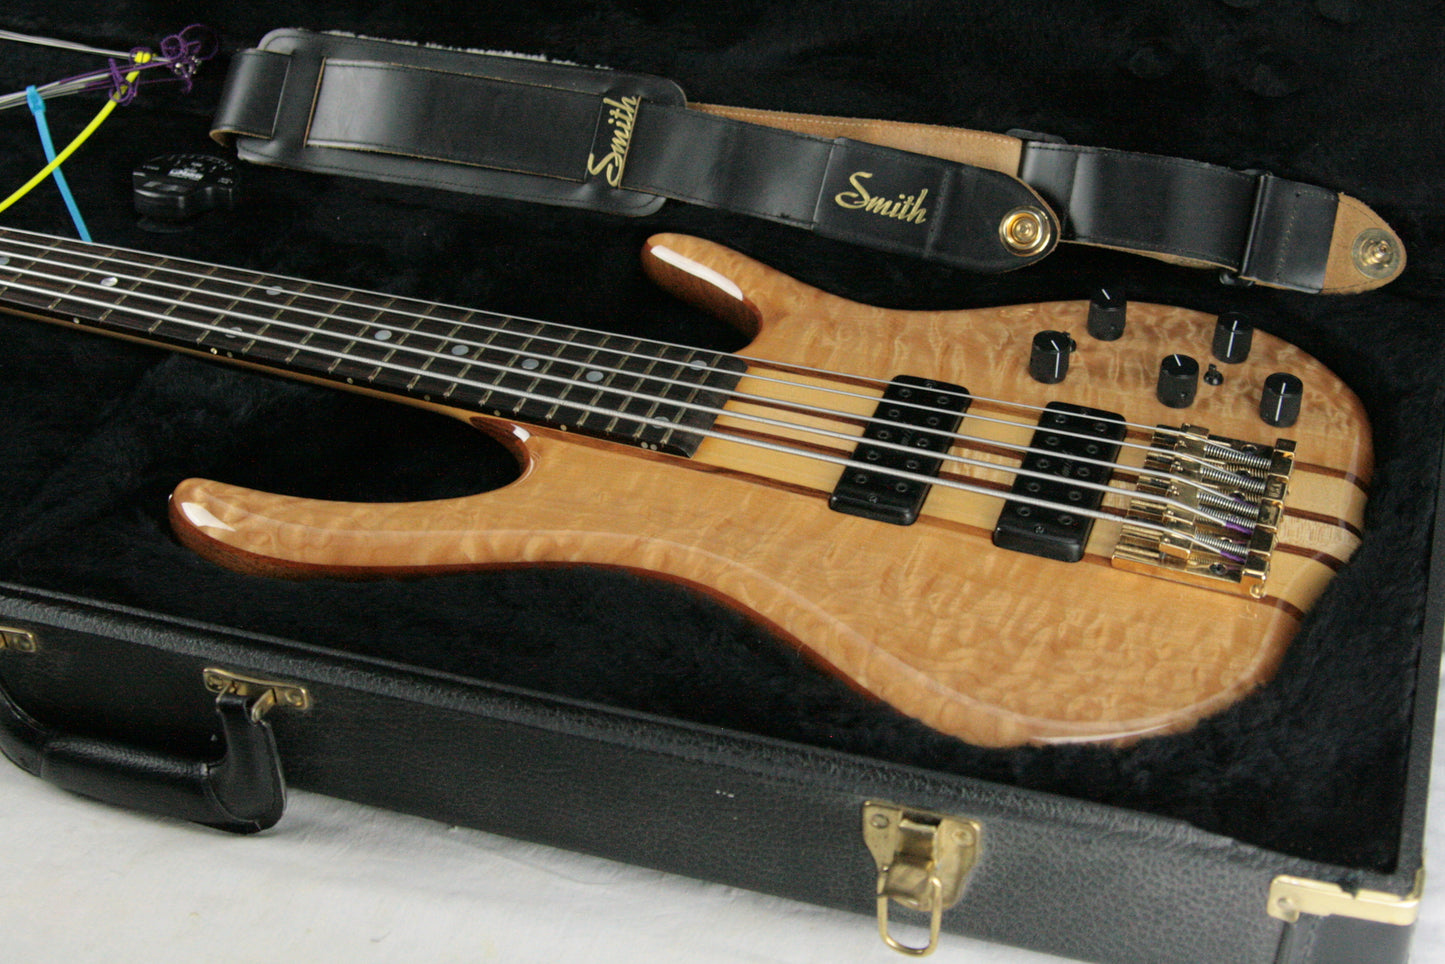 CLEAN 2006 Ken Smith BSR 5EG Elite 5-String Bass! Tiger Maple QUILT Top! Neck-Thru